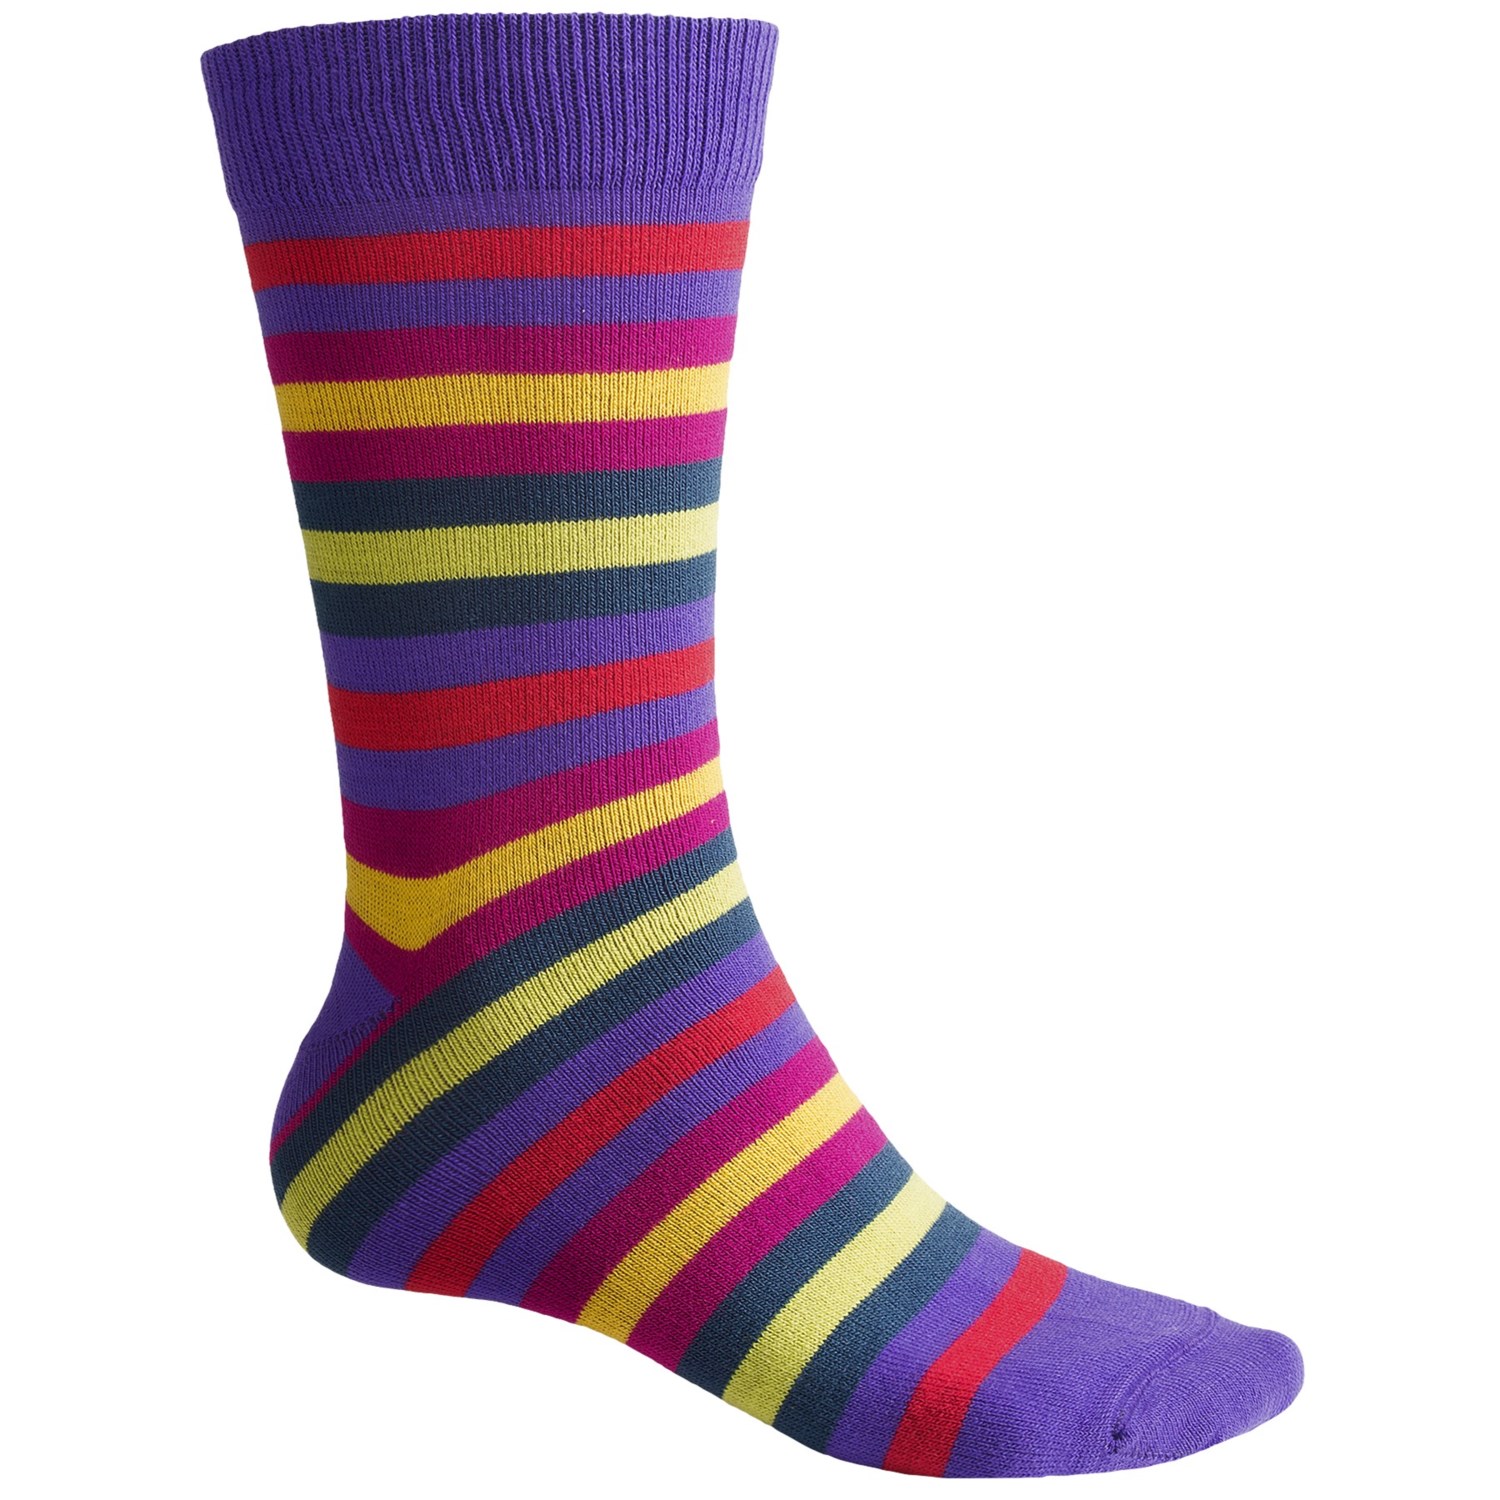 Eurosocks Thin Stripes Crew Socks For Men  Save 59%